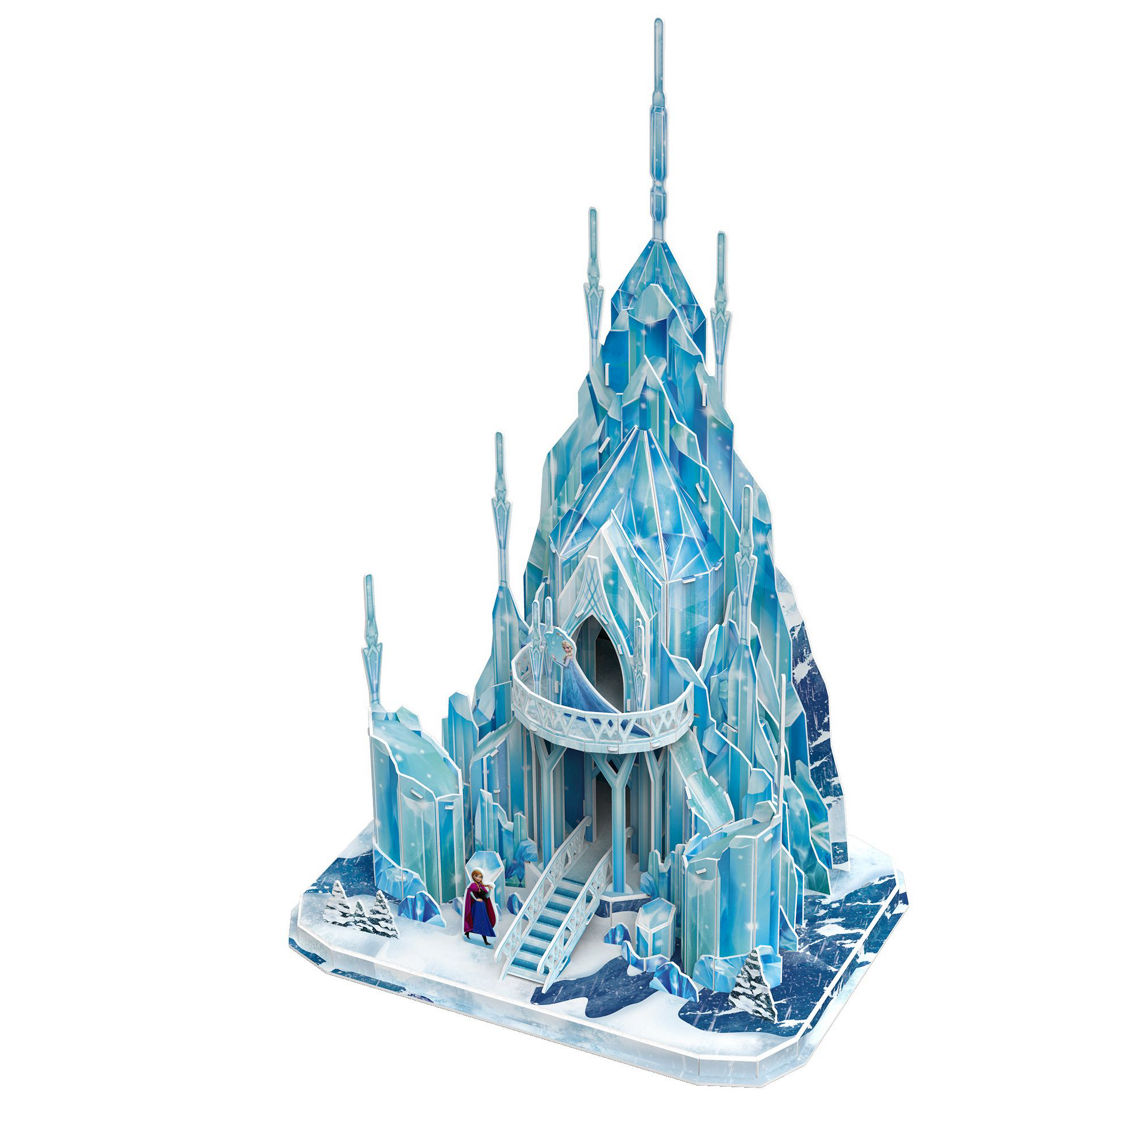 4D Cityscape Disney Frozen - Elsa's Ice Palace 3D Puzzle: 73 Pcs - Image 4 of 5